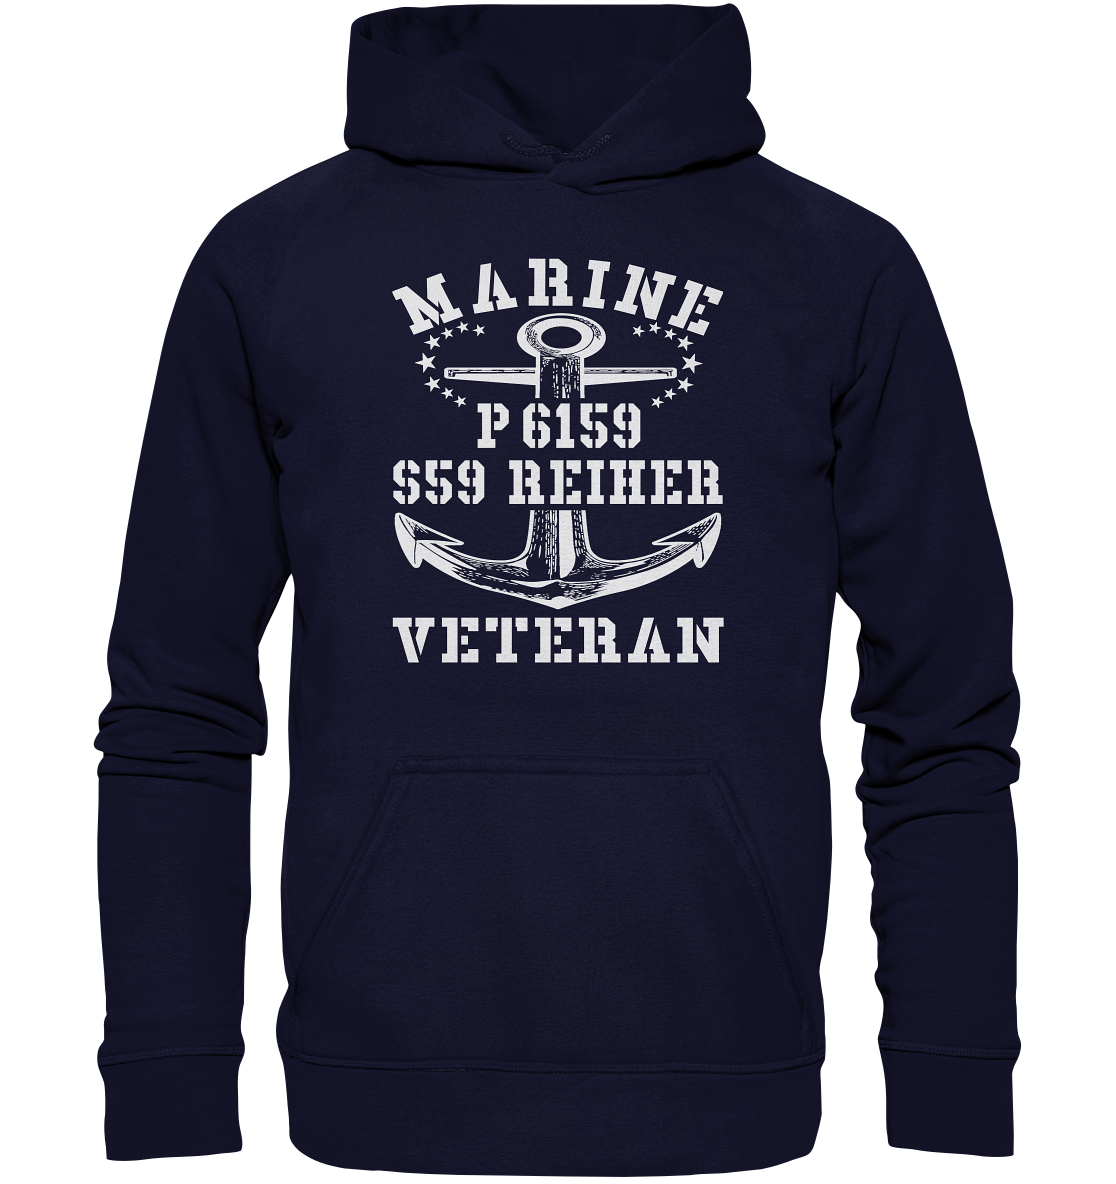 P6159 S59 REIHER Marine Veteran - Basic Unisex Hoodie